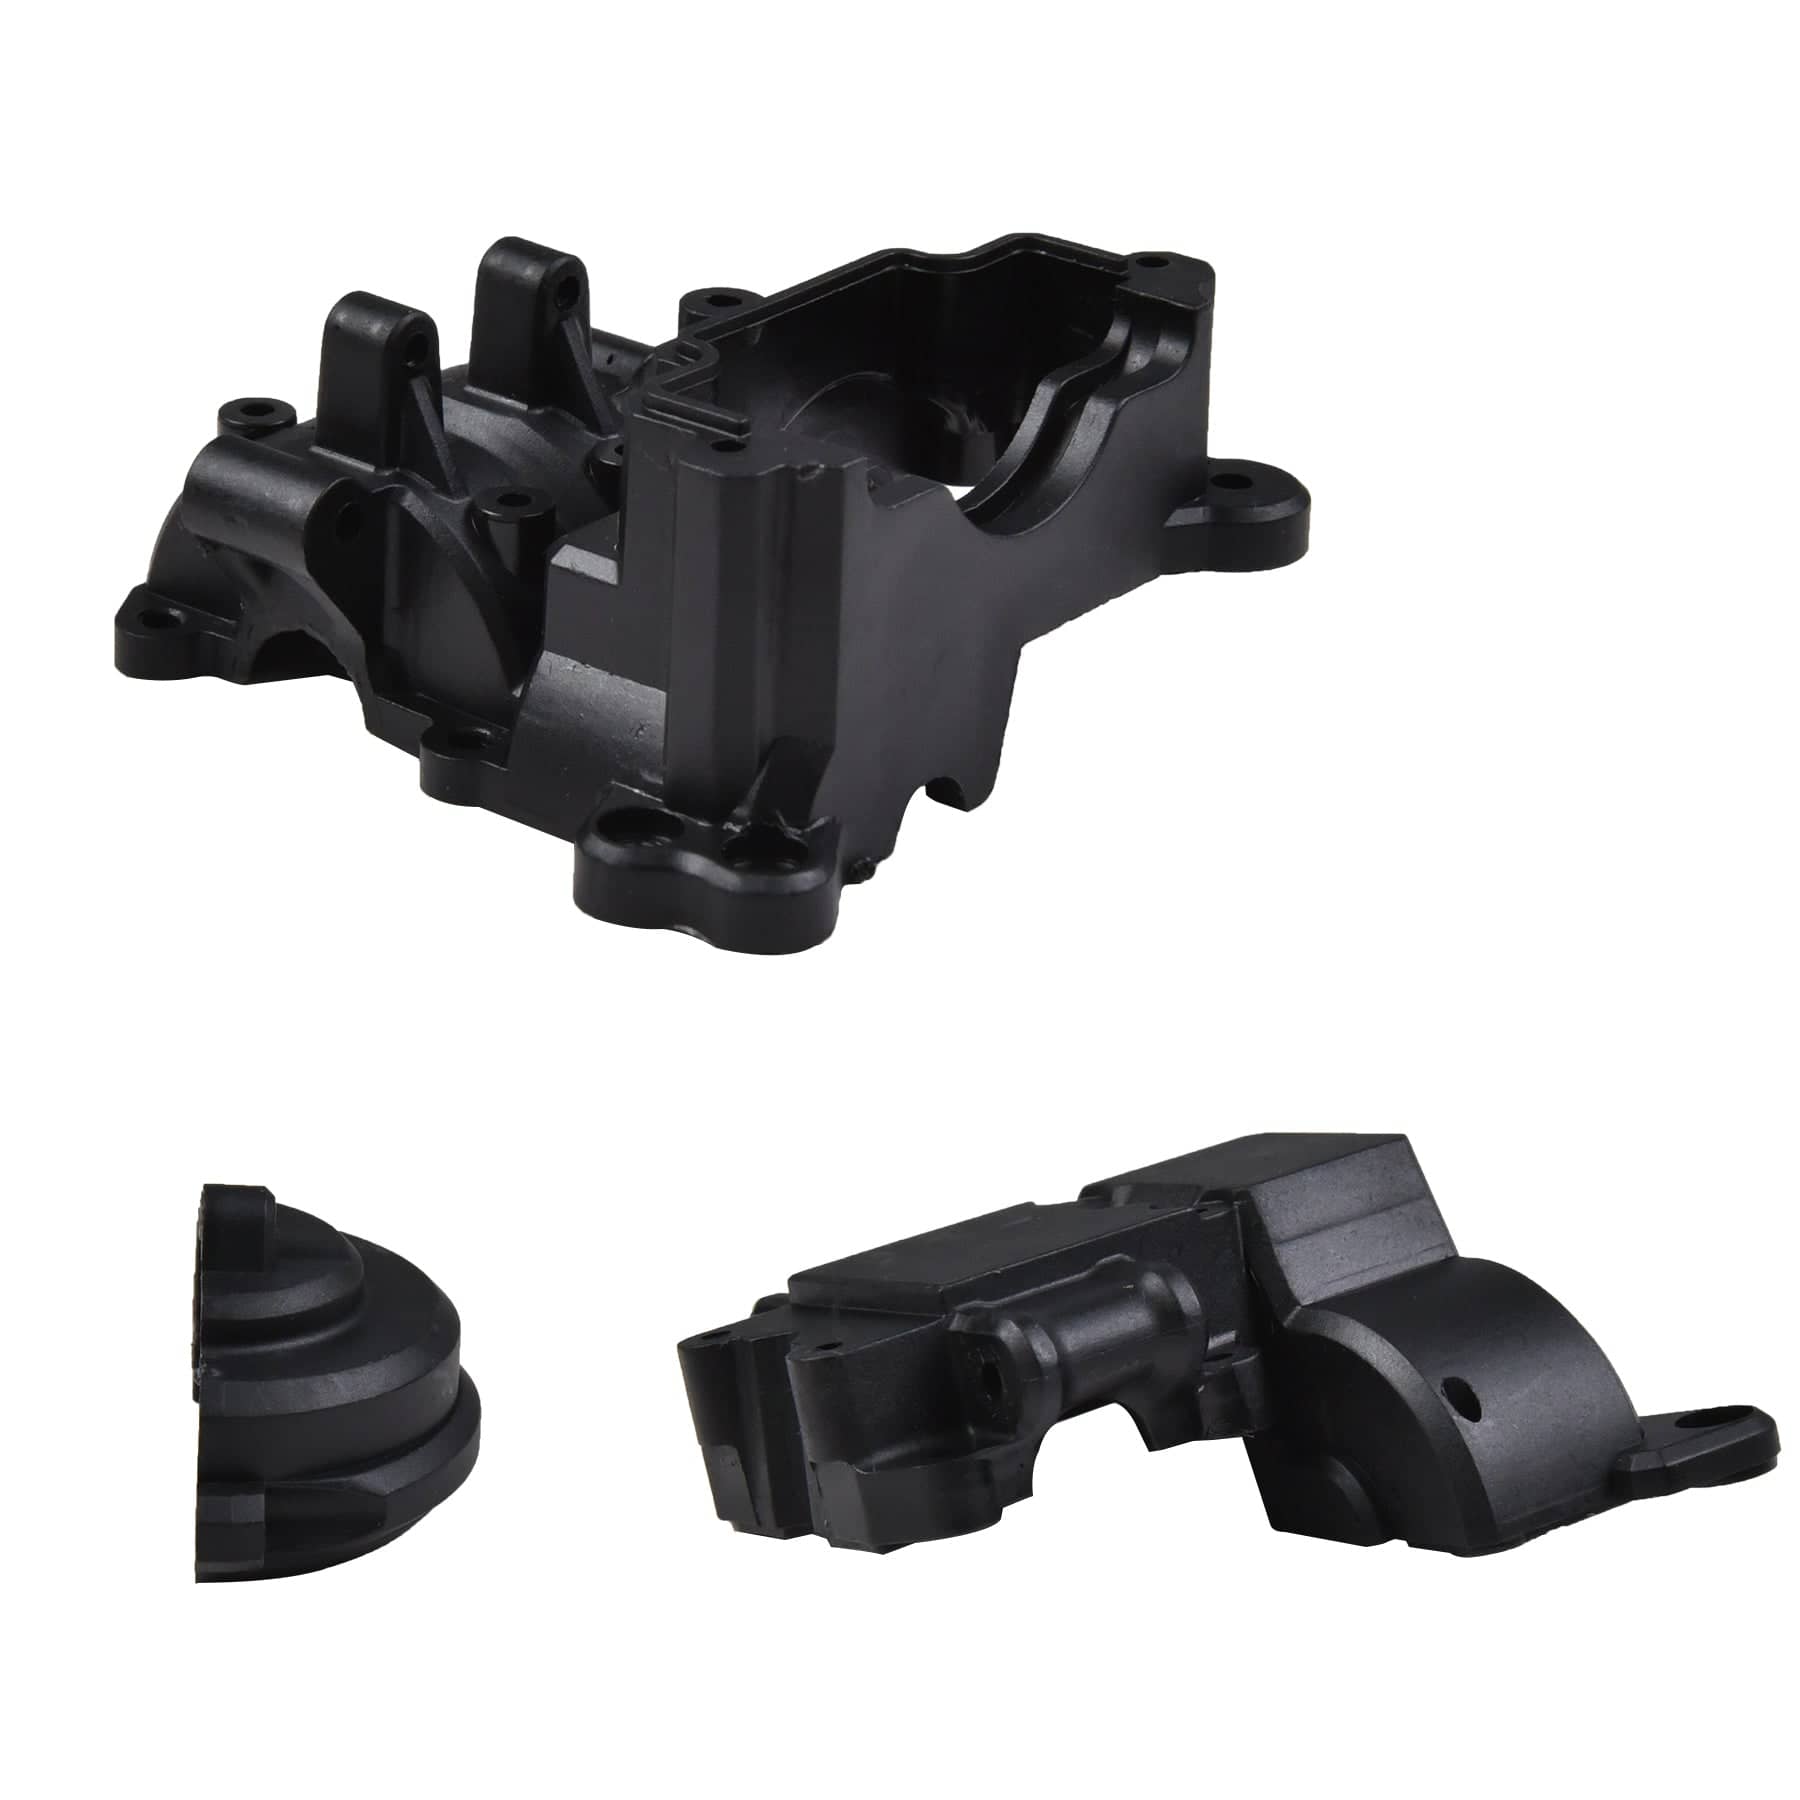 HOSIM RC Car Rear Gear Box Components 1:10 Scale C12012+12013+12014 for X07 X08